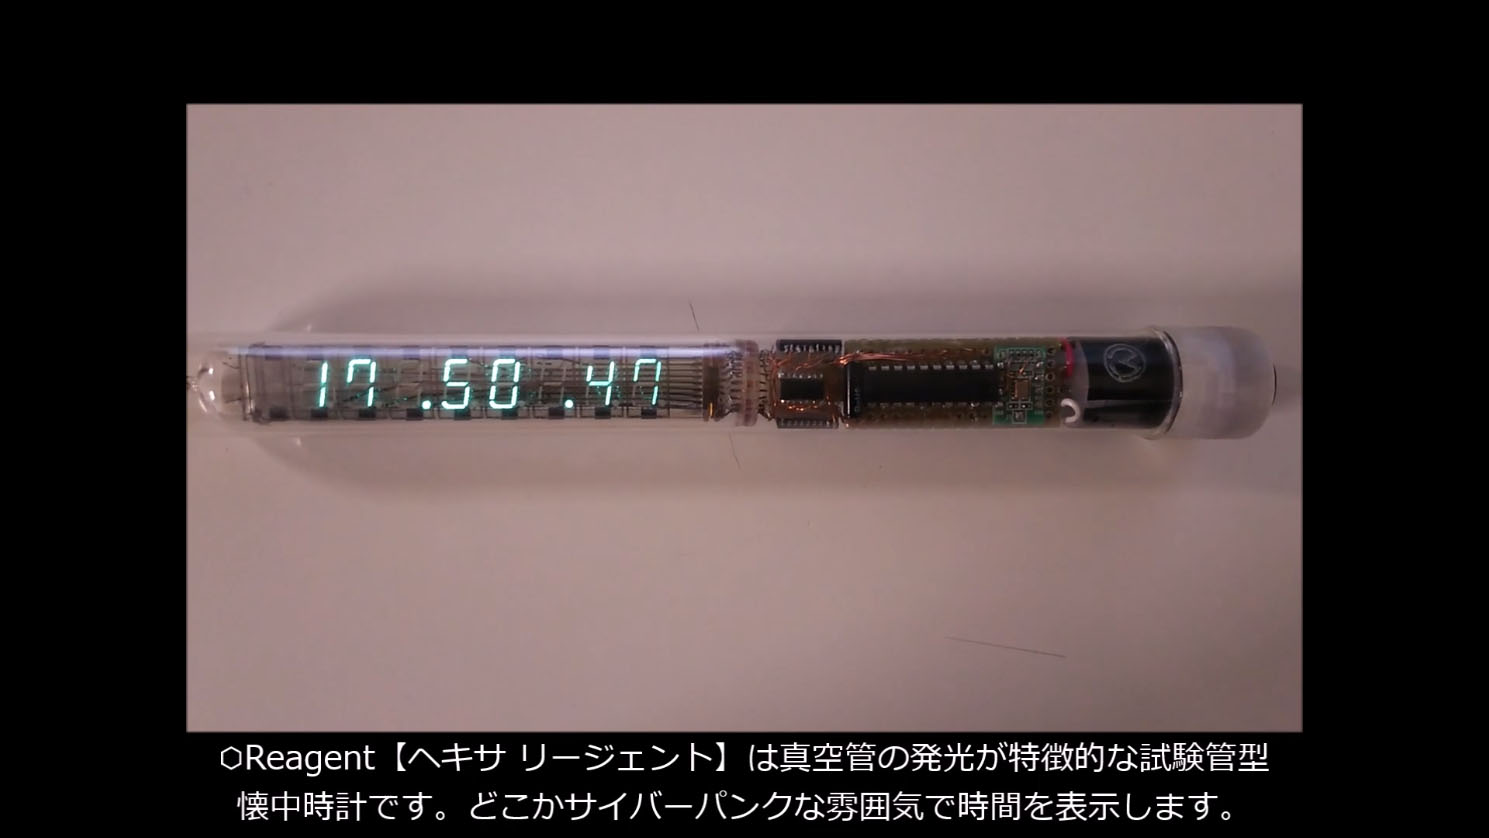 ビンテージの蛍光表示管でデジタル時計を作ってみた 淡い緑色がサイバーカッコいい仕上がりに 欲しい の声多数 Ameba News アメーバニュース